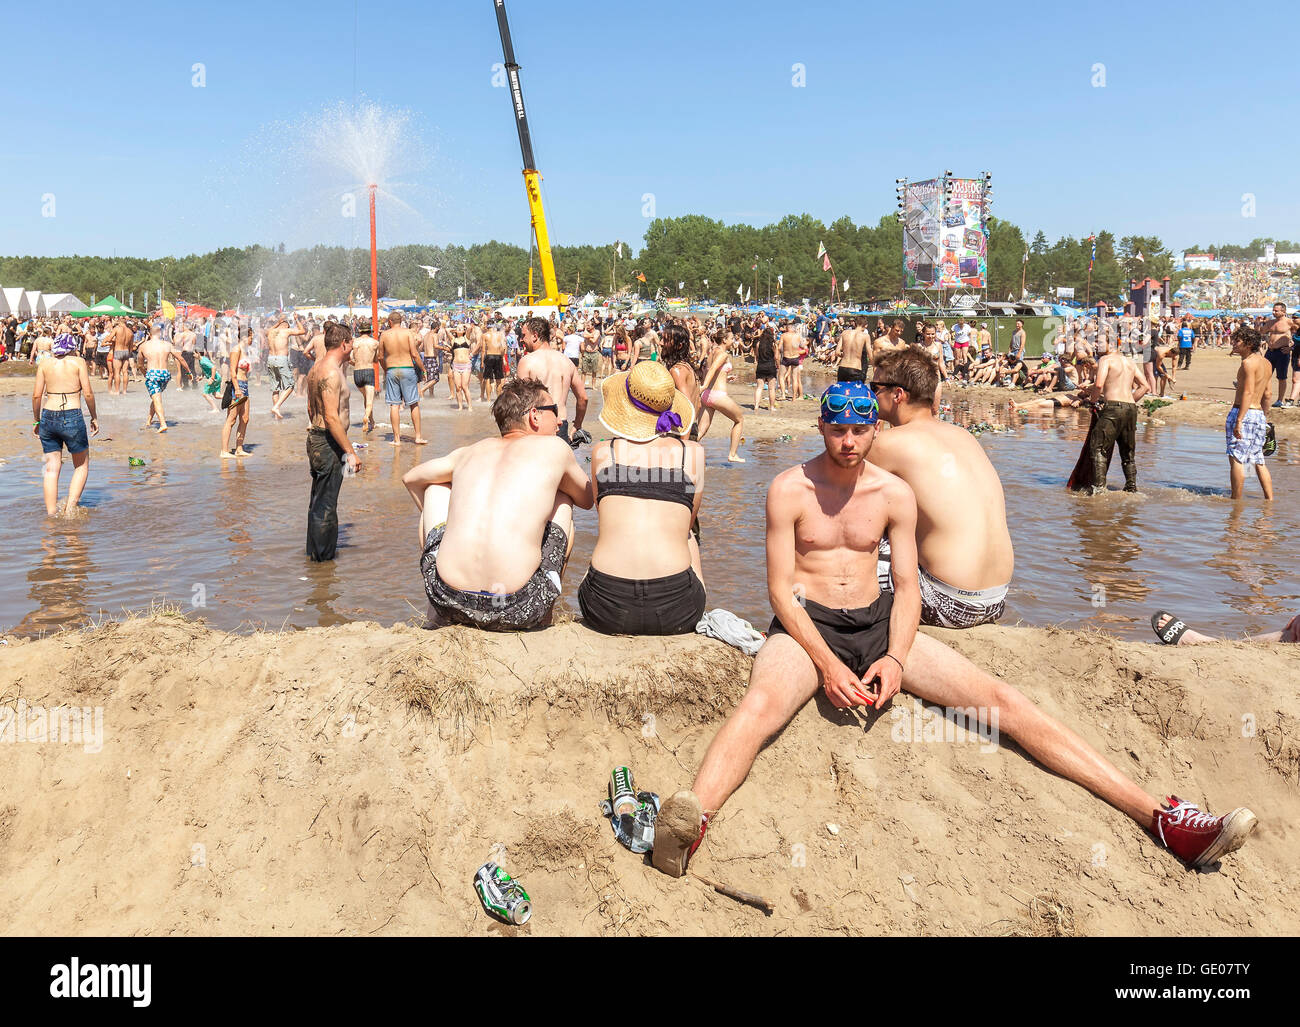 Giovane uomo in appoggio presso la piscina di fango durante il XXI festival di Woodstock in Polonia. Foto Stock